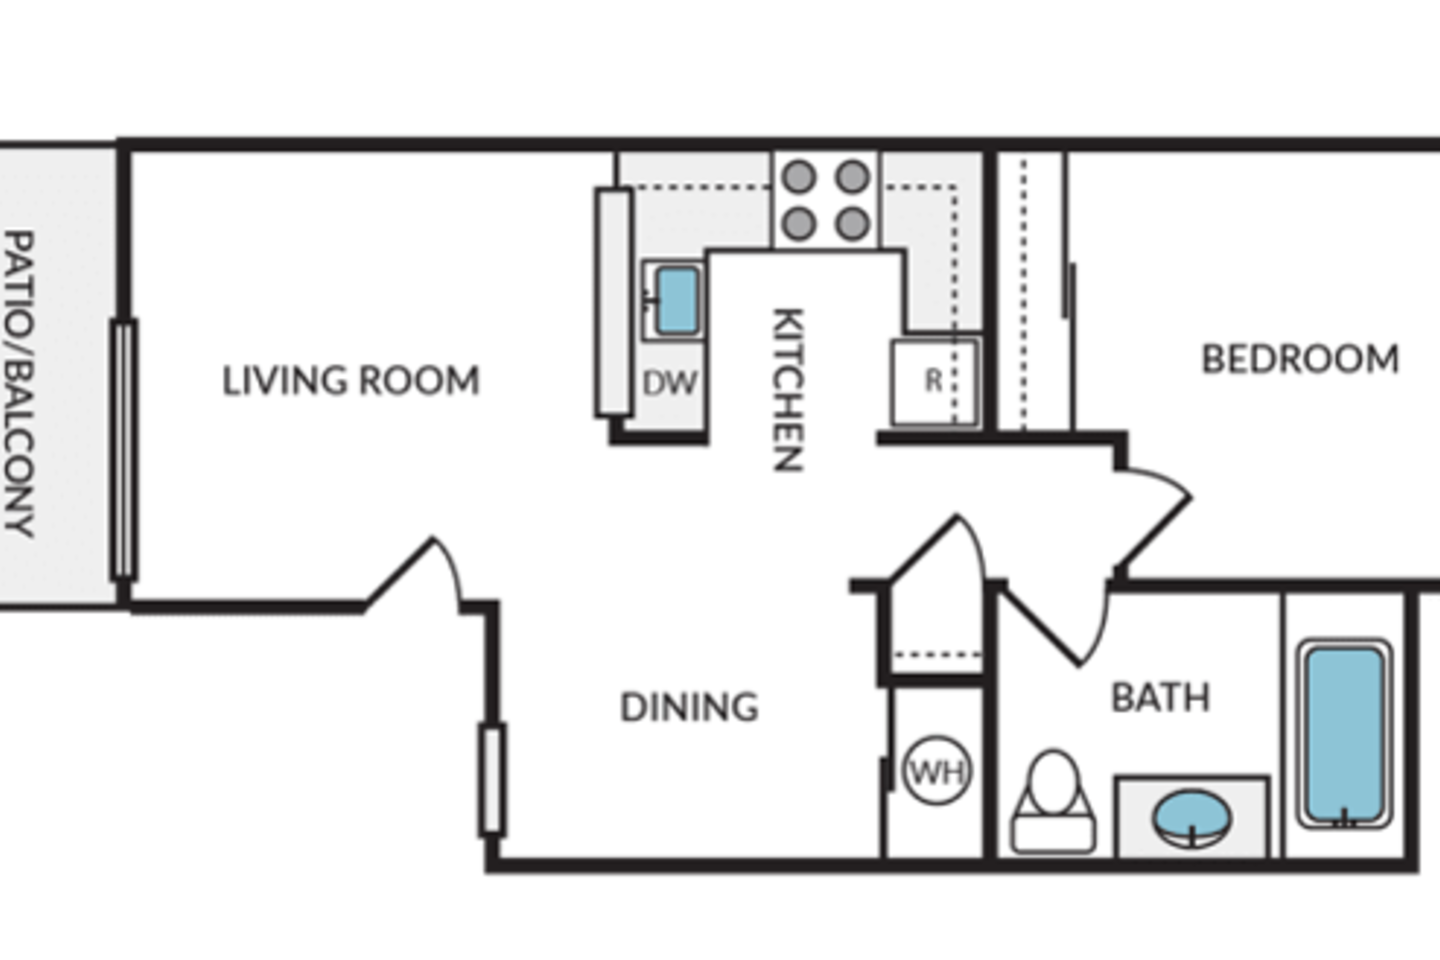 Floorplan diagram for The Alder, showing 1 bedroom